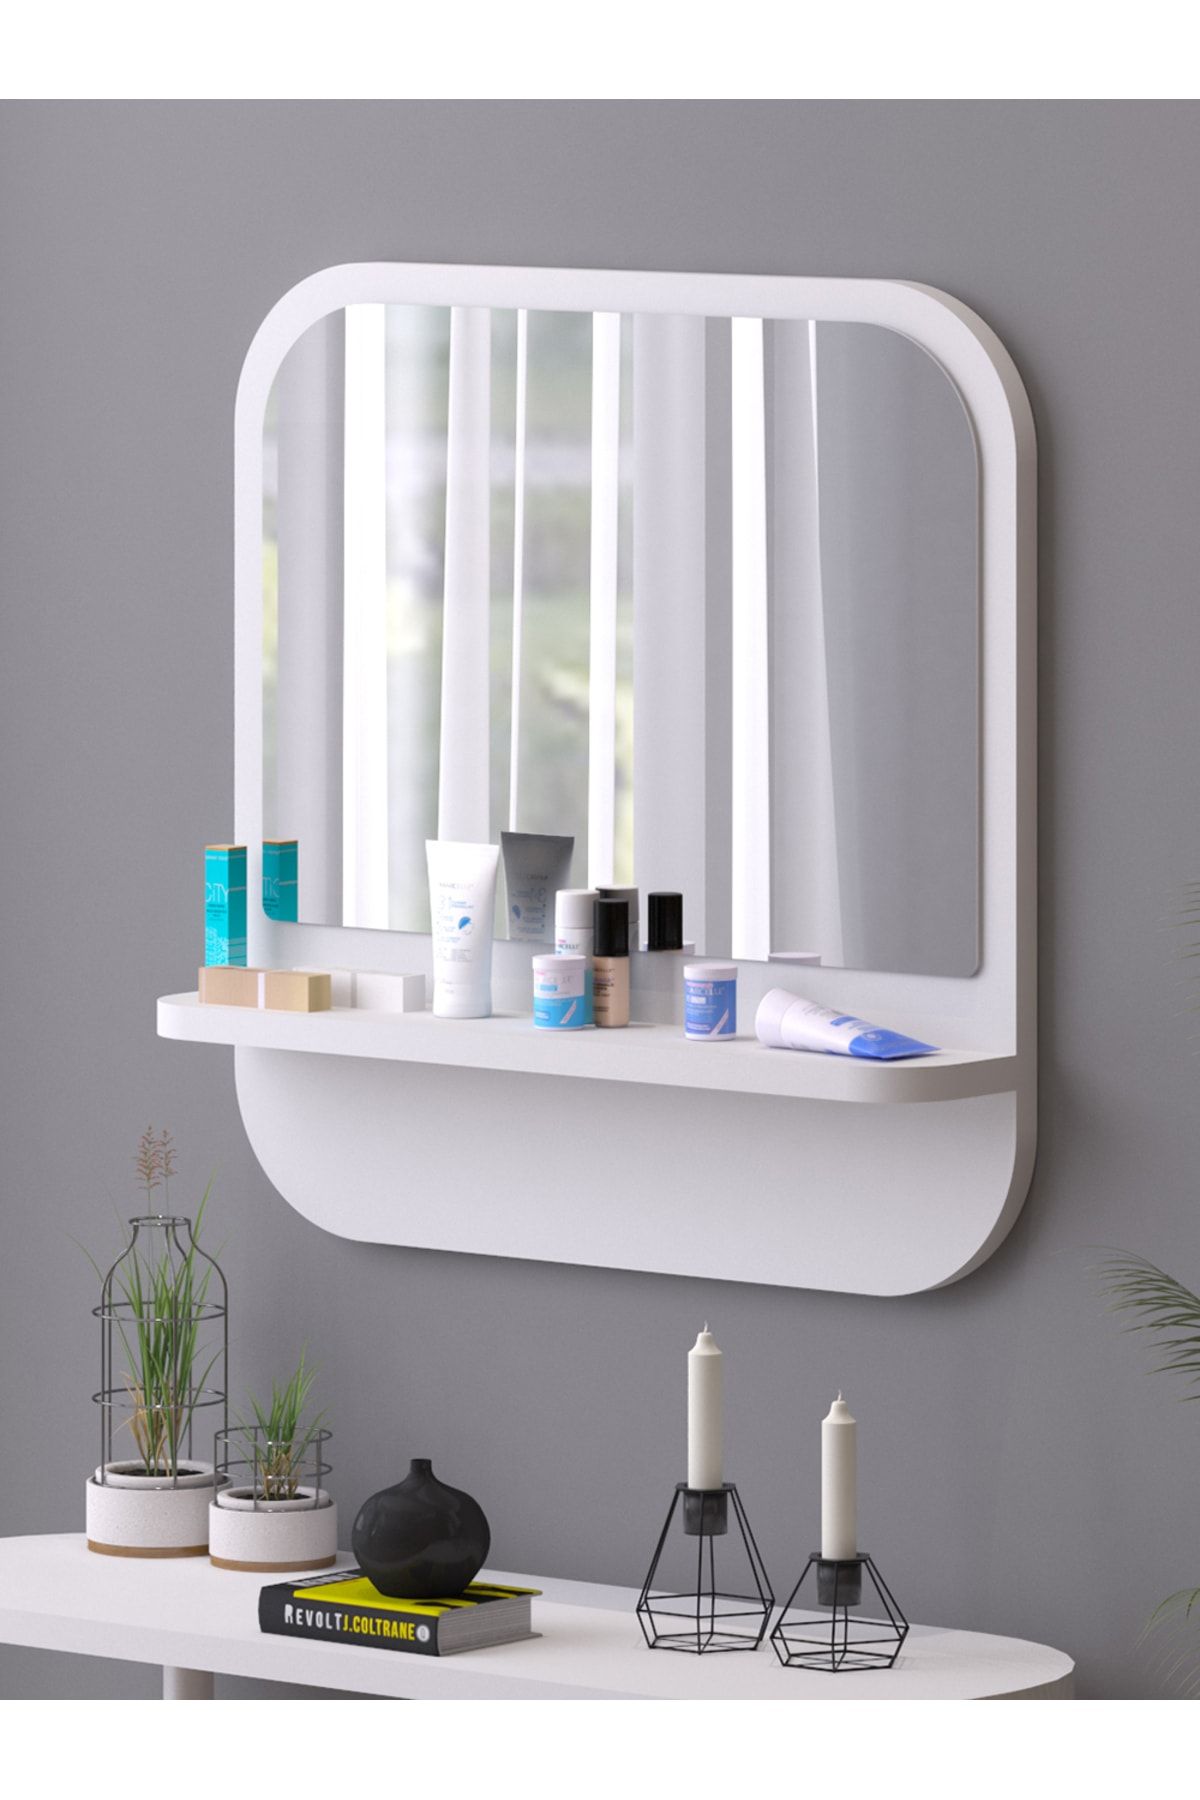 nysamo Raflı Kare 58 cm Koridor Dresuar Konsol Duvar Salon Banyo Ofis Çocuk Yatak Oda raflı Aynası